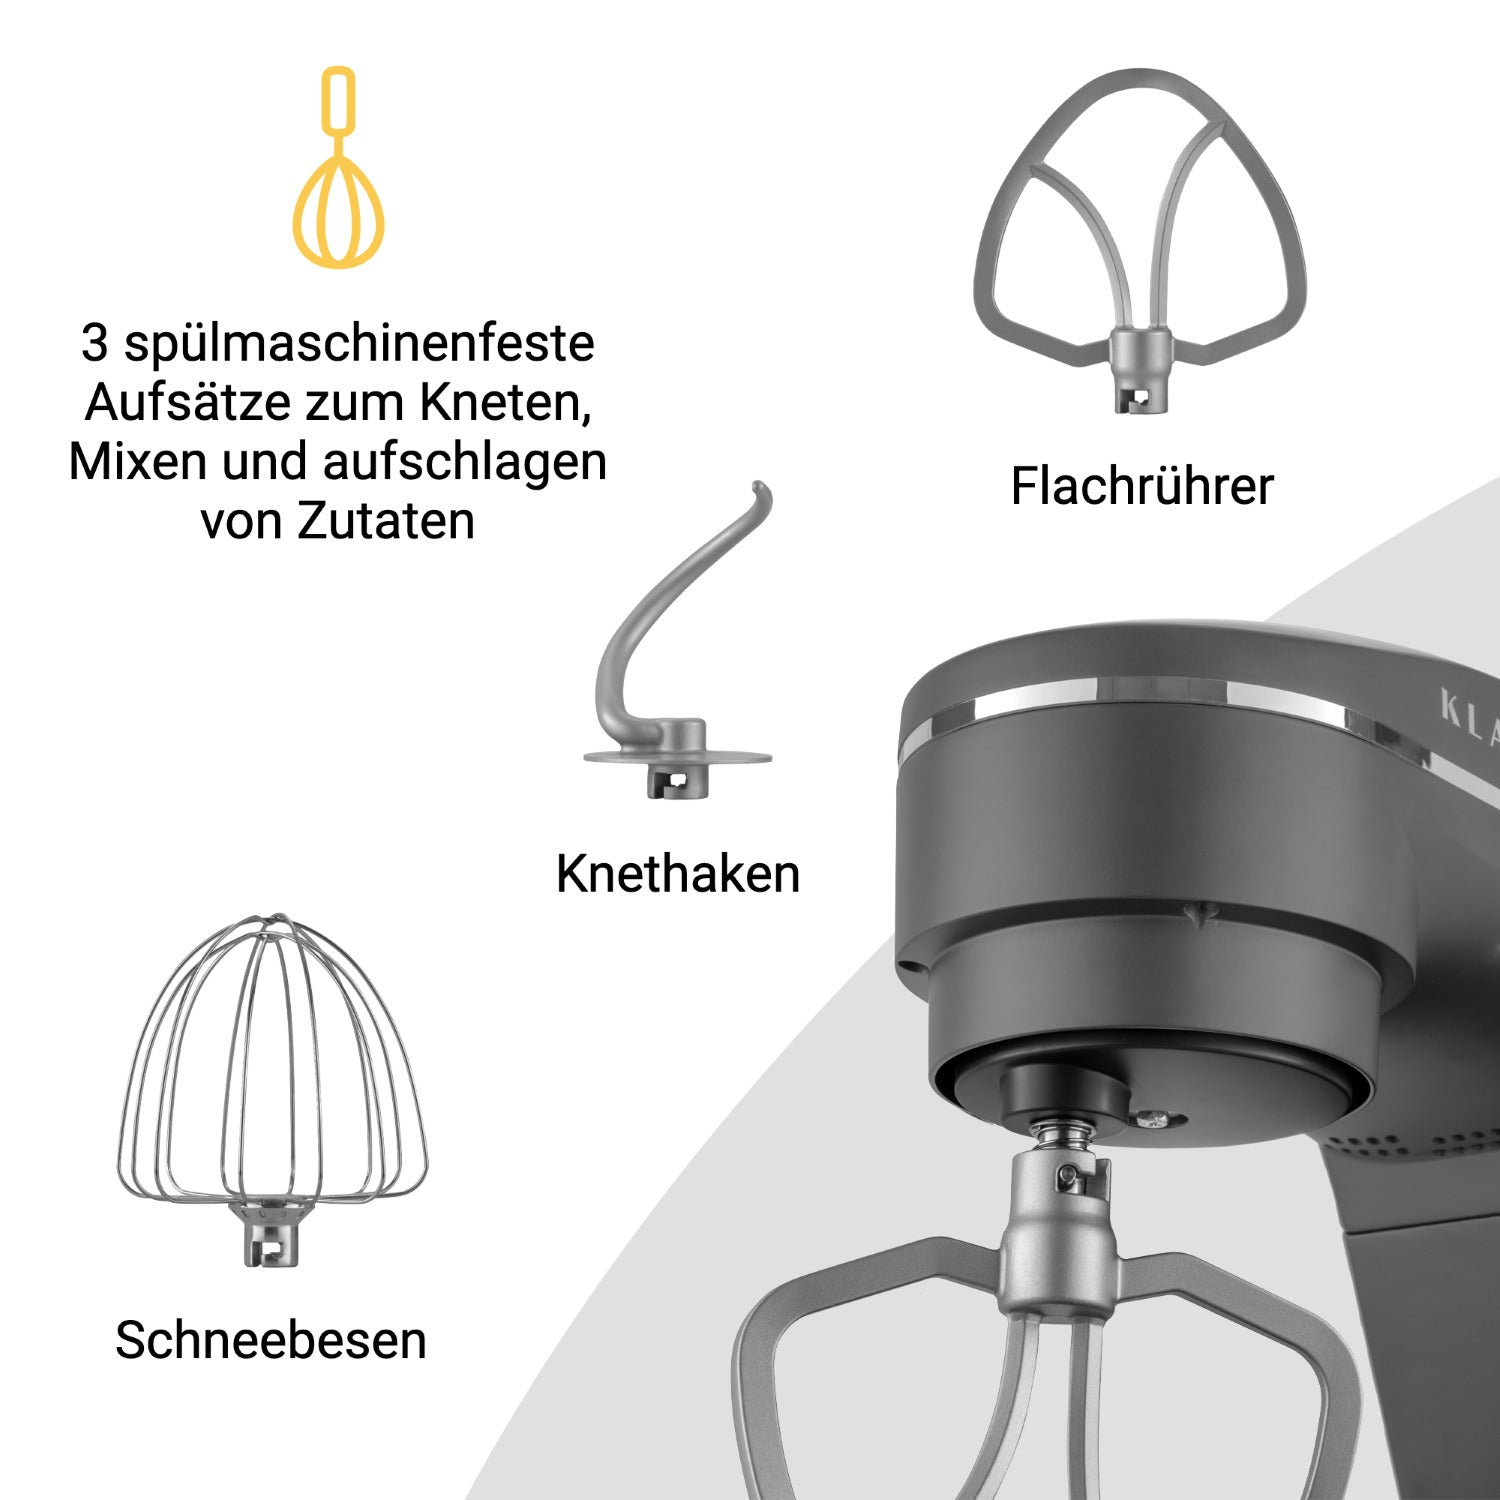 KLAMER Küchenmaschine - Grau Küchenmaschine (1800 Watt) Grau